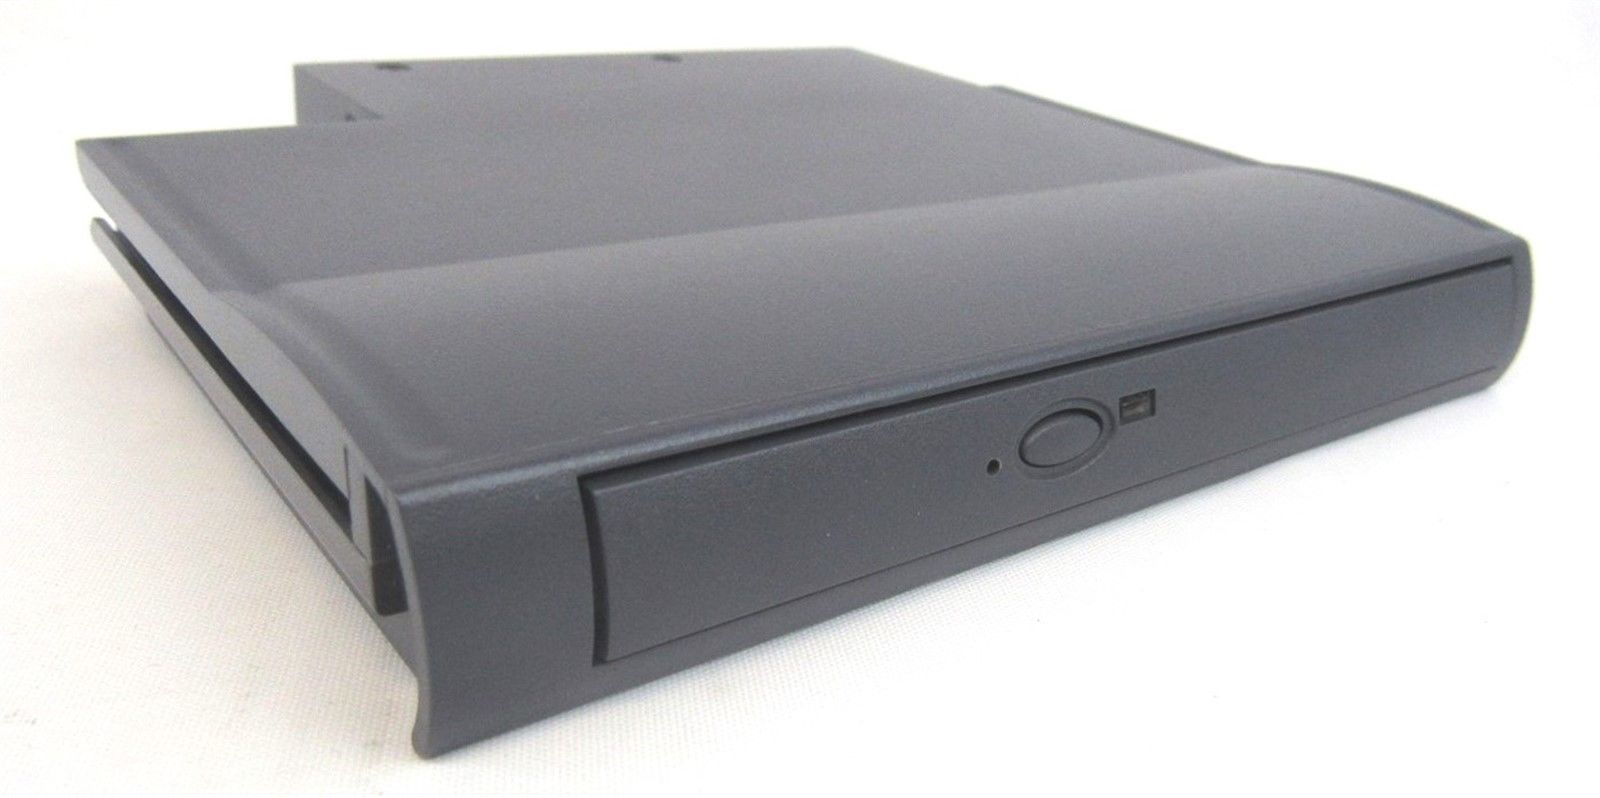 HP OmniBook 900 4100 4150 Laptop Notebook 24X CD-ROM Module F1474A